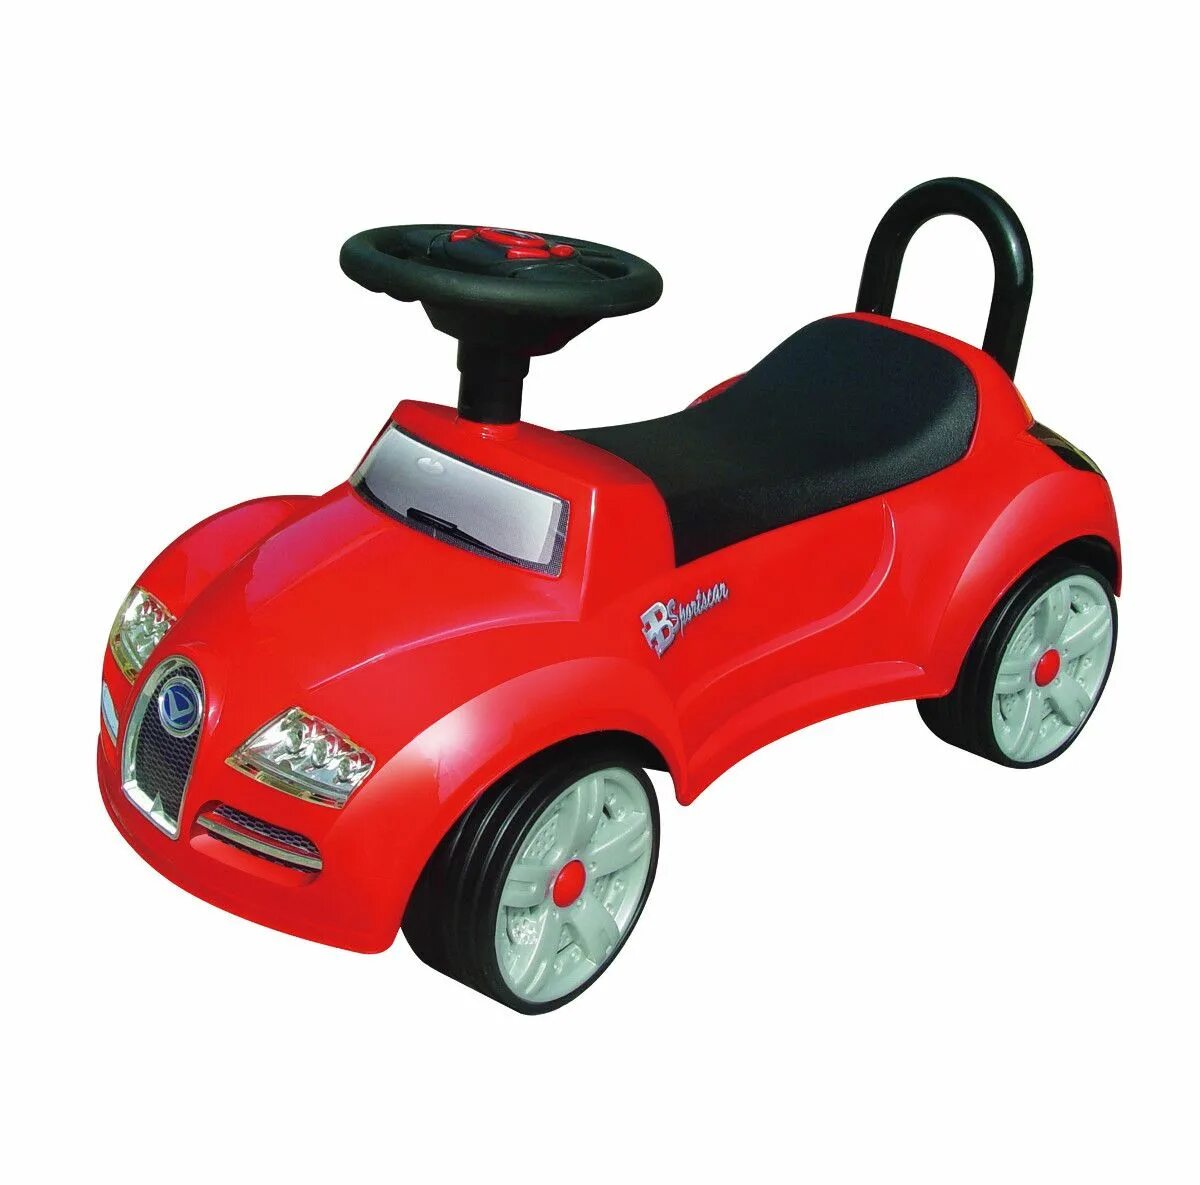 Машинка детская для катания. Машина каталка красная. Машинка каталка со спинкой. Машина каталка Red.